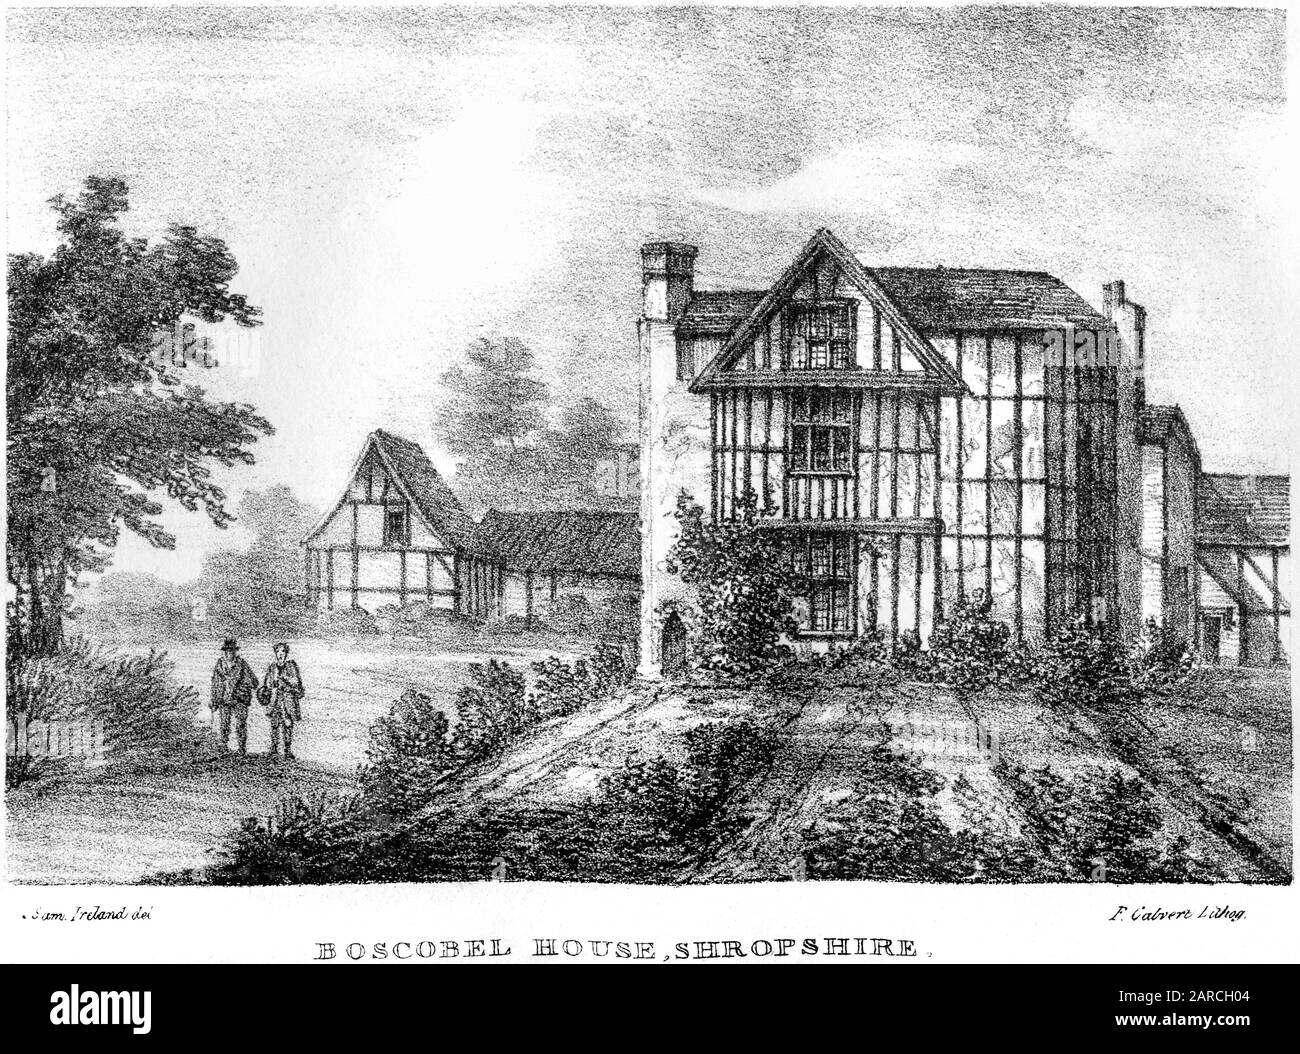 Une lithographie de Boscobel House, Shropshire numérisé à haute résolution. À partir d'un livre imprimé en 1824.Cette image est considérée comme exempte de tout droit d'auteur. Banque D'Images